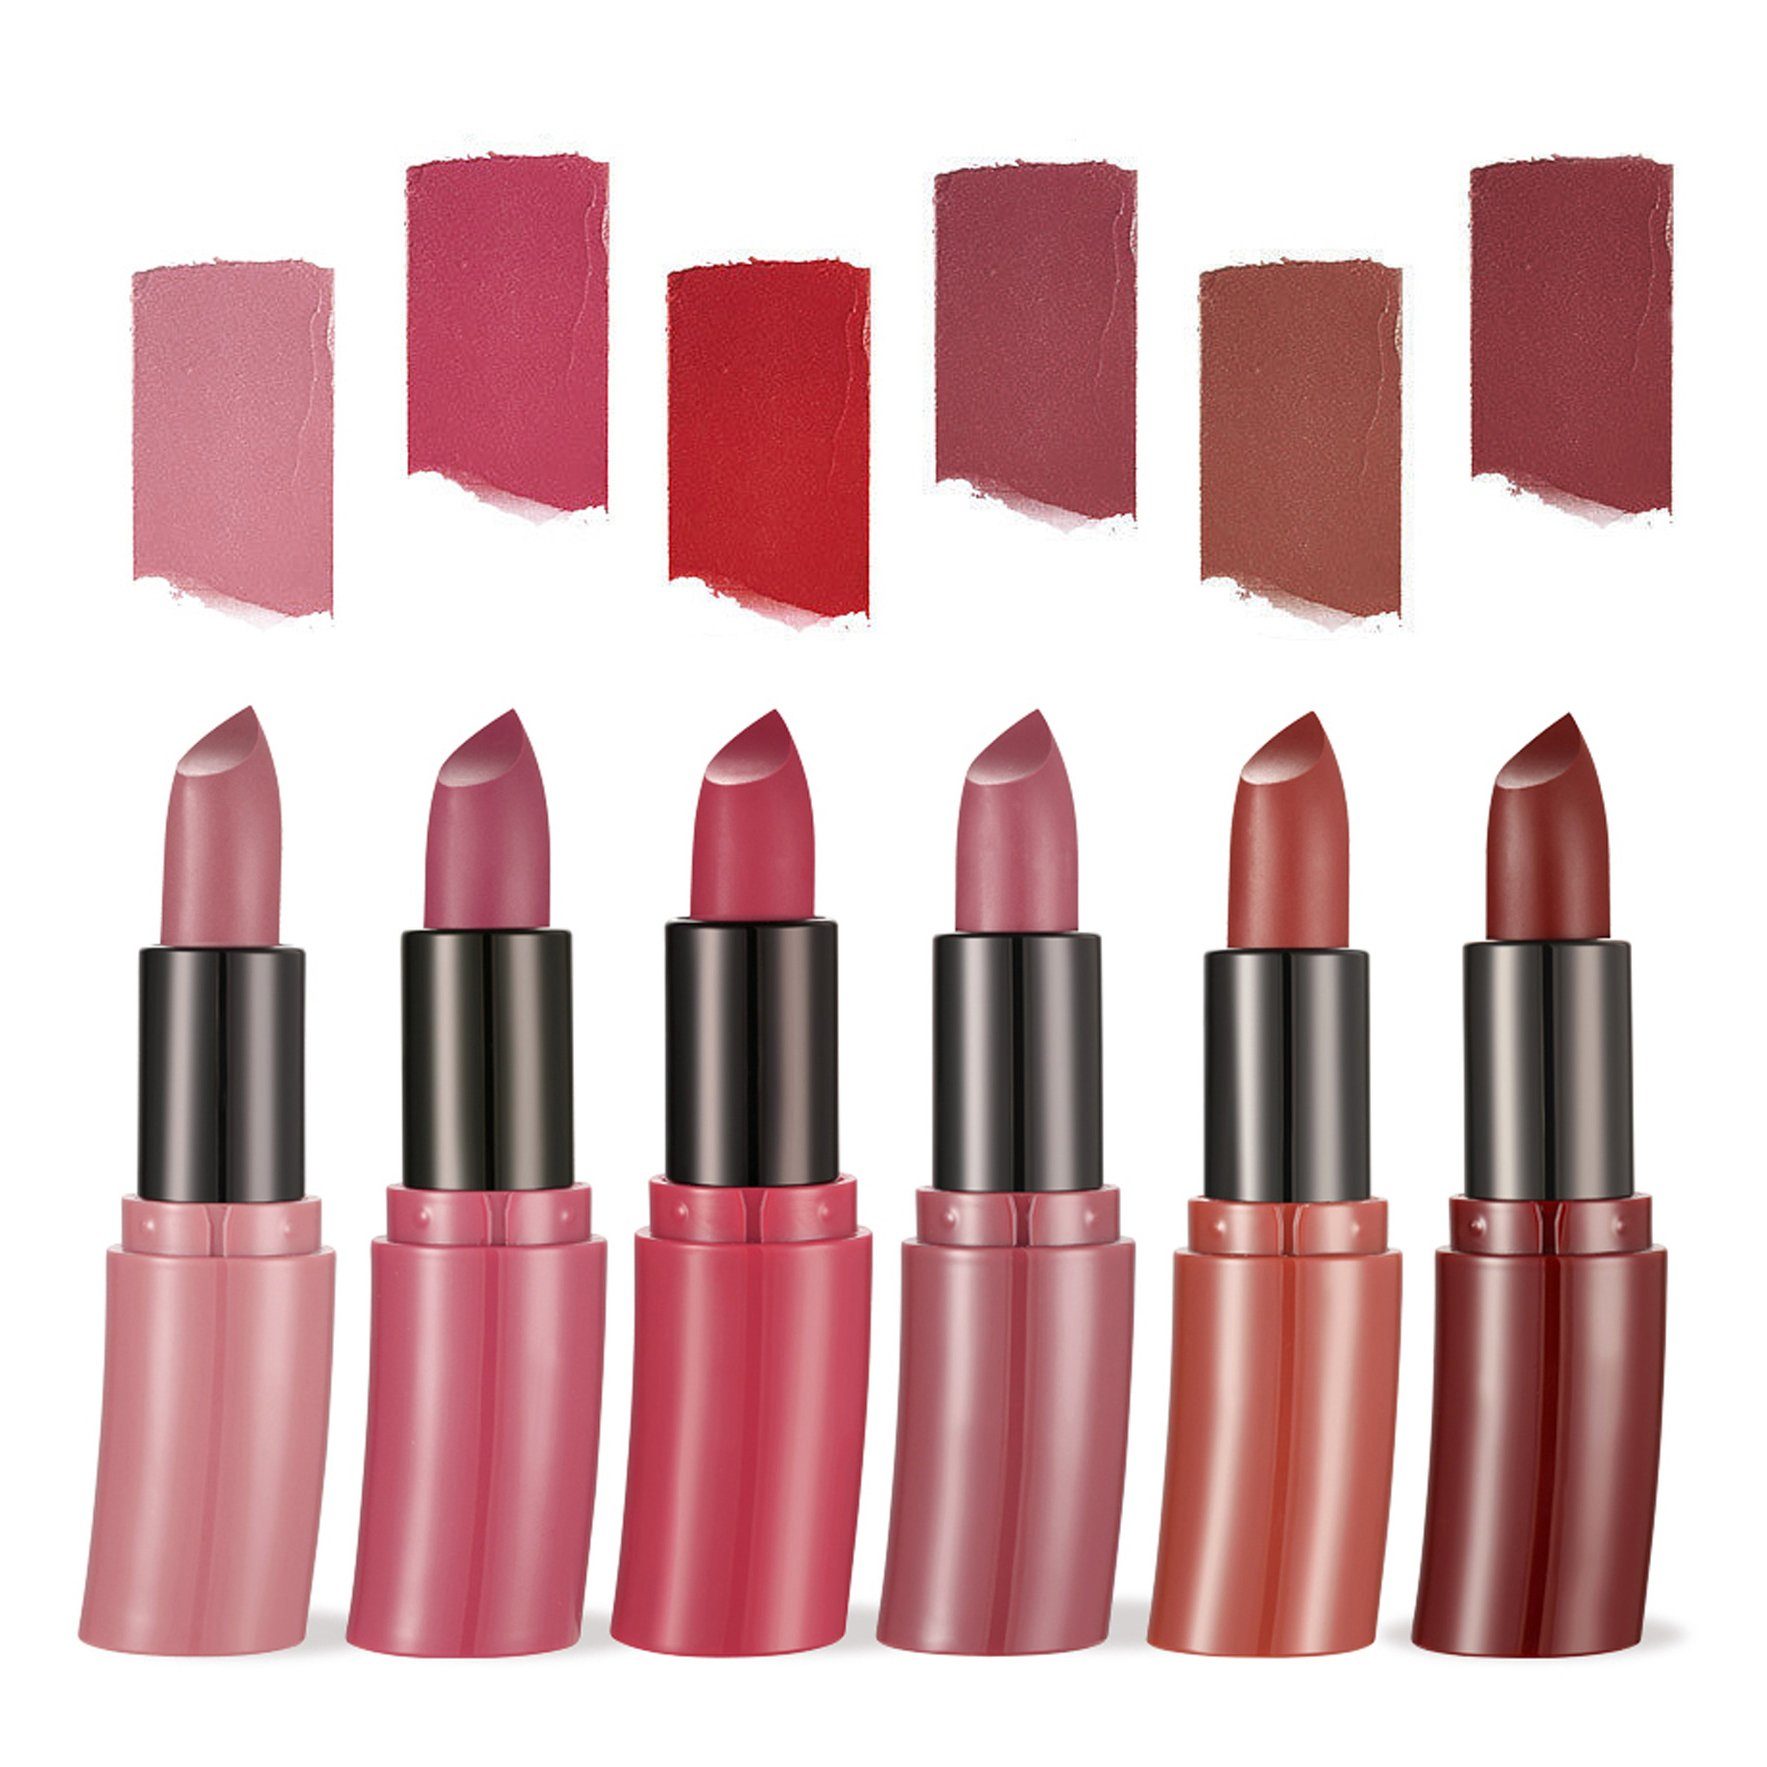 Haiaveng Lippenstift-Set 6 Farben Set, Matt Ink Wasserdichte Set Lippenstift Flüssiger Lipstick Lippenstift Nude Makeup Rot Samt Lippenstifte